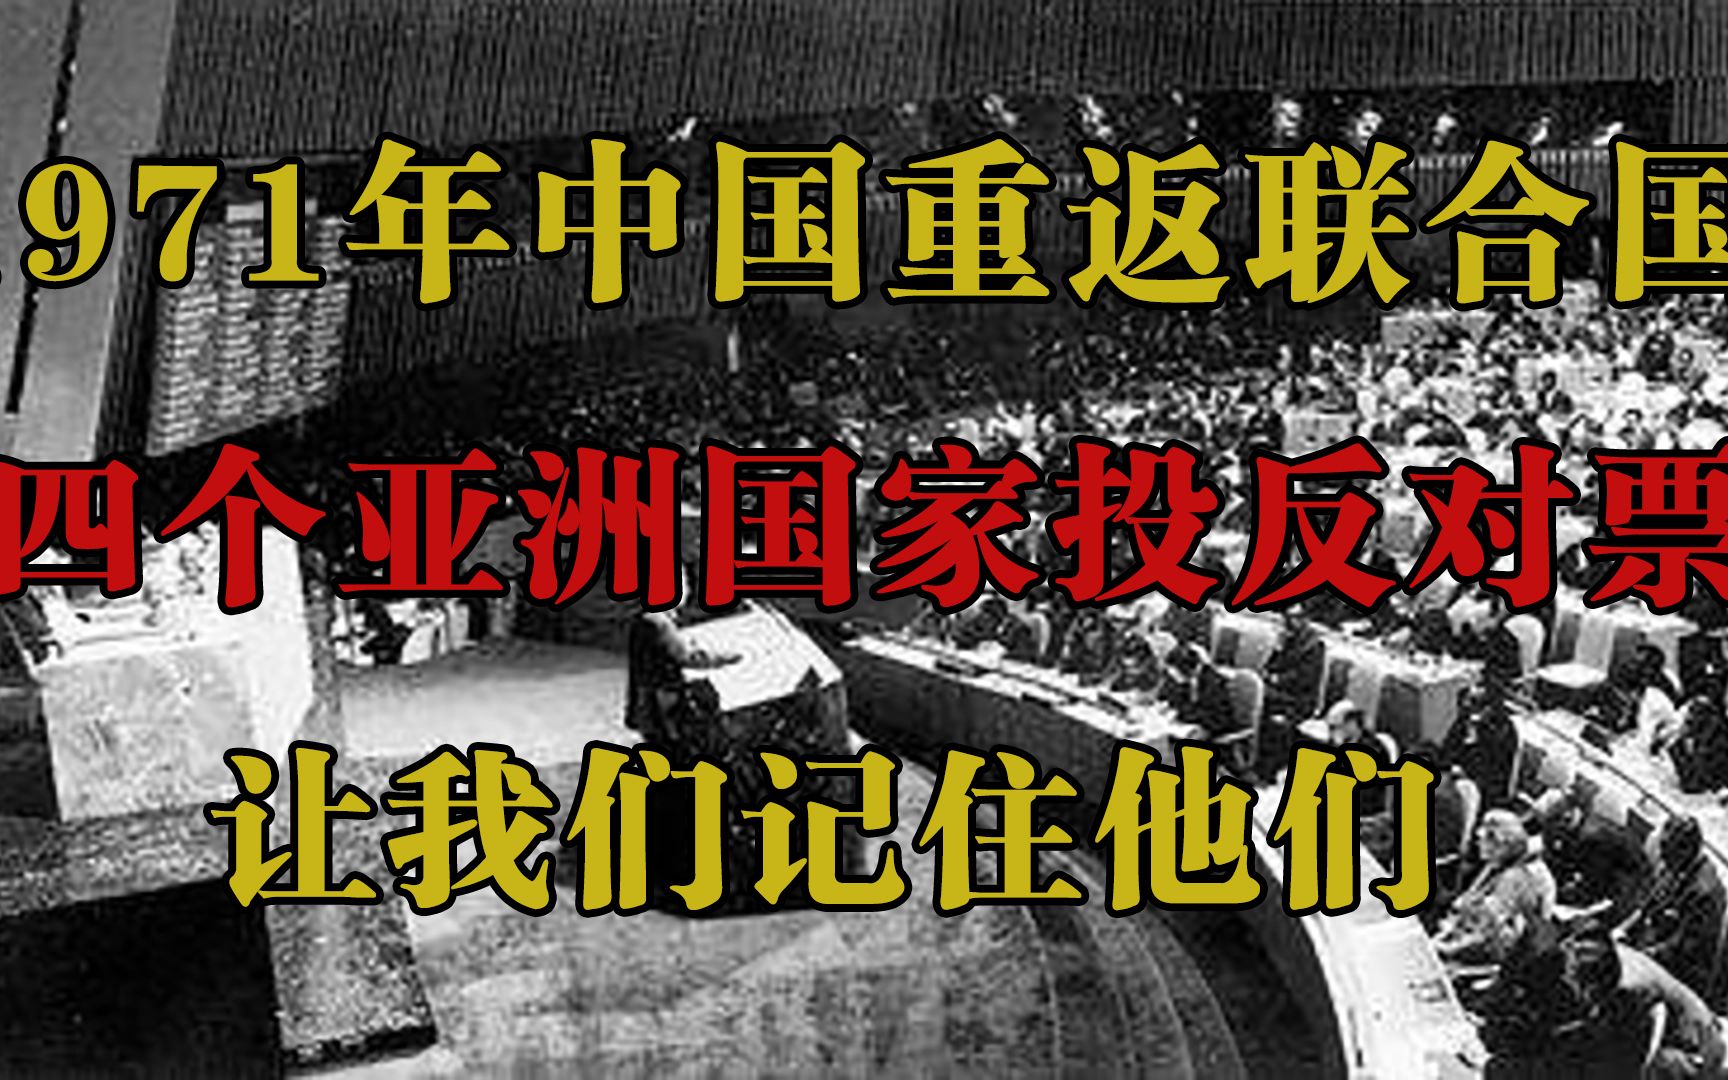 1971年中国重返联合国，四个亚洲国家投反对票，让我们记住他们